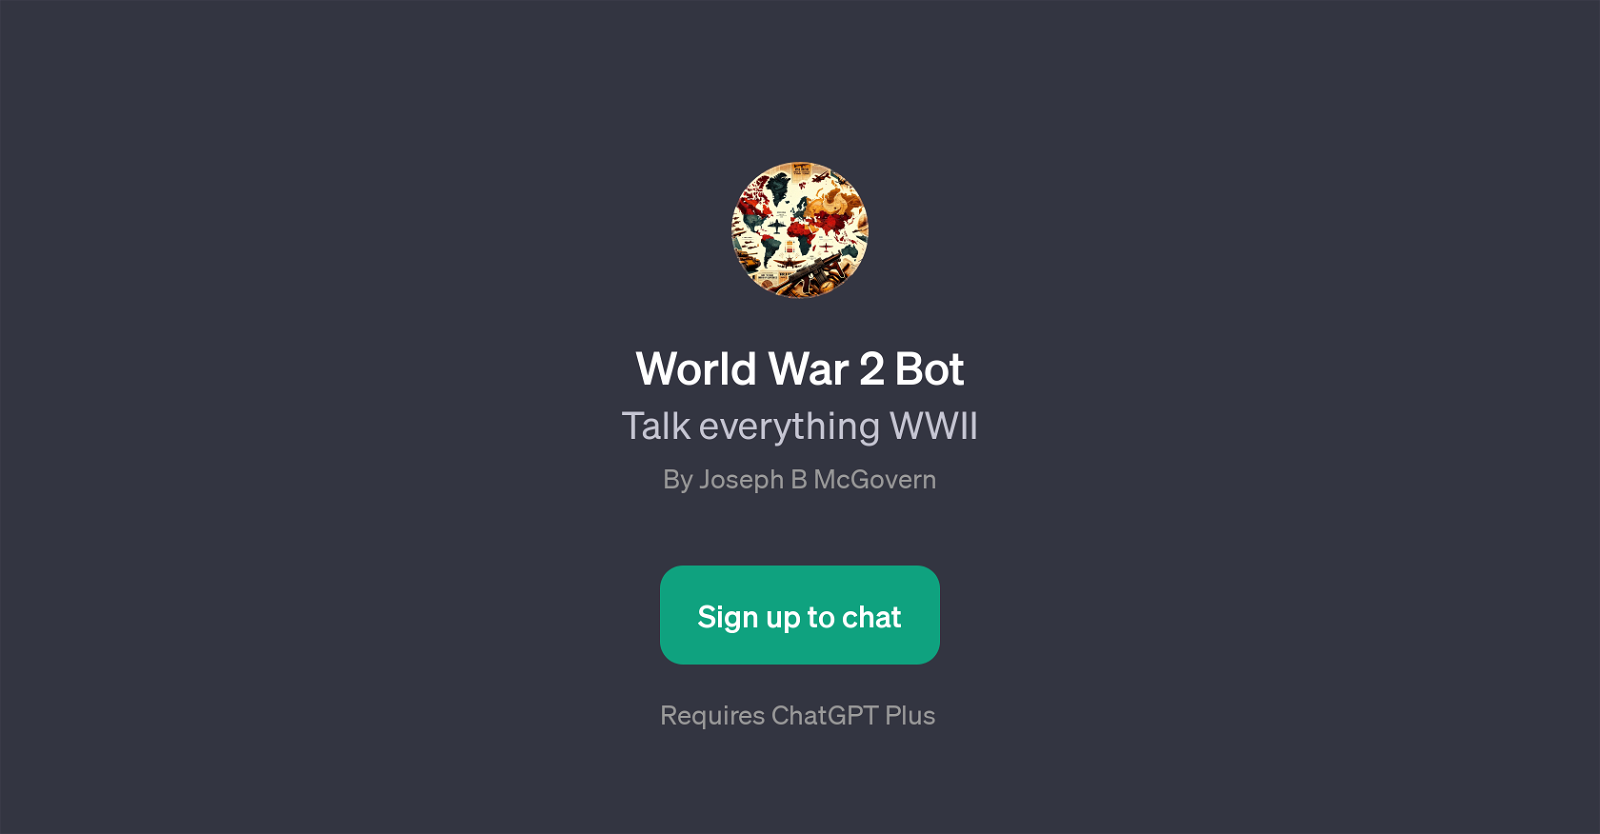 World War 2 Bot website